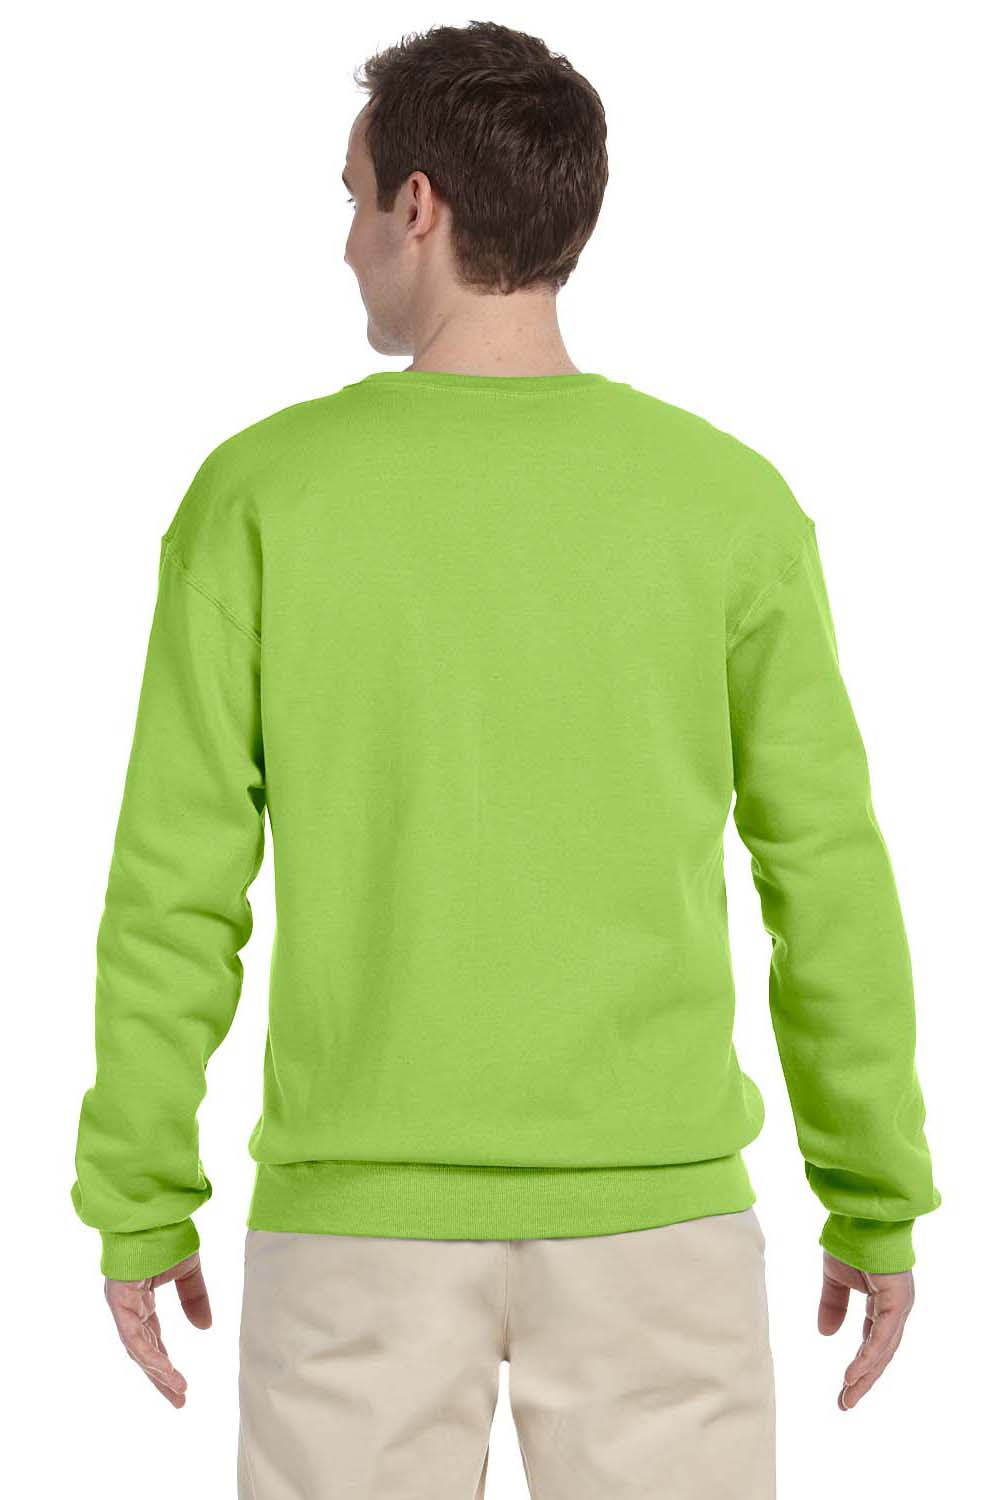 Jerzees 562 Mens NuBlend Fleece Crewneck Sweatshirt Neon Green Back